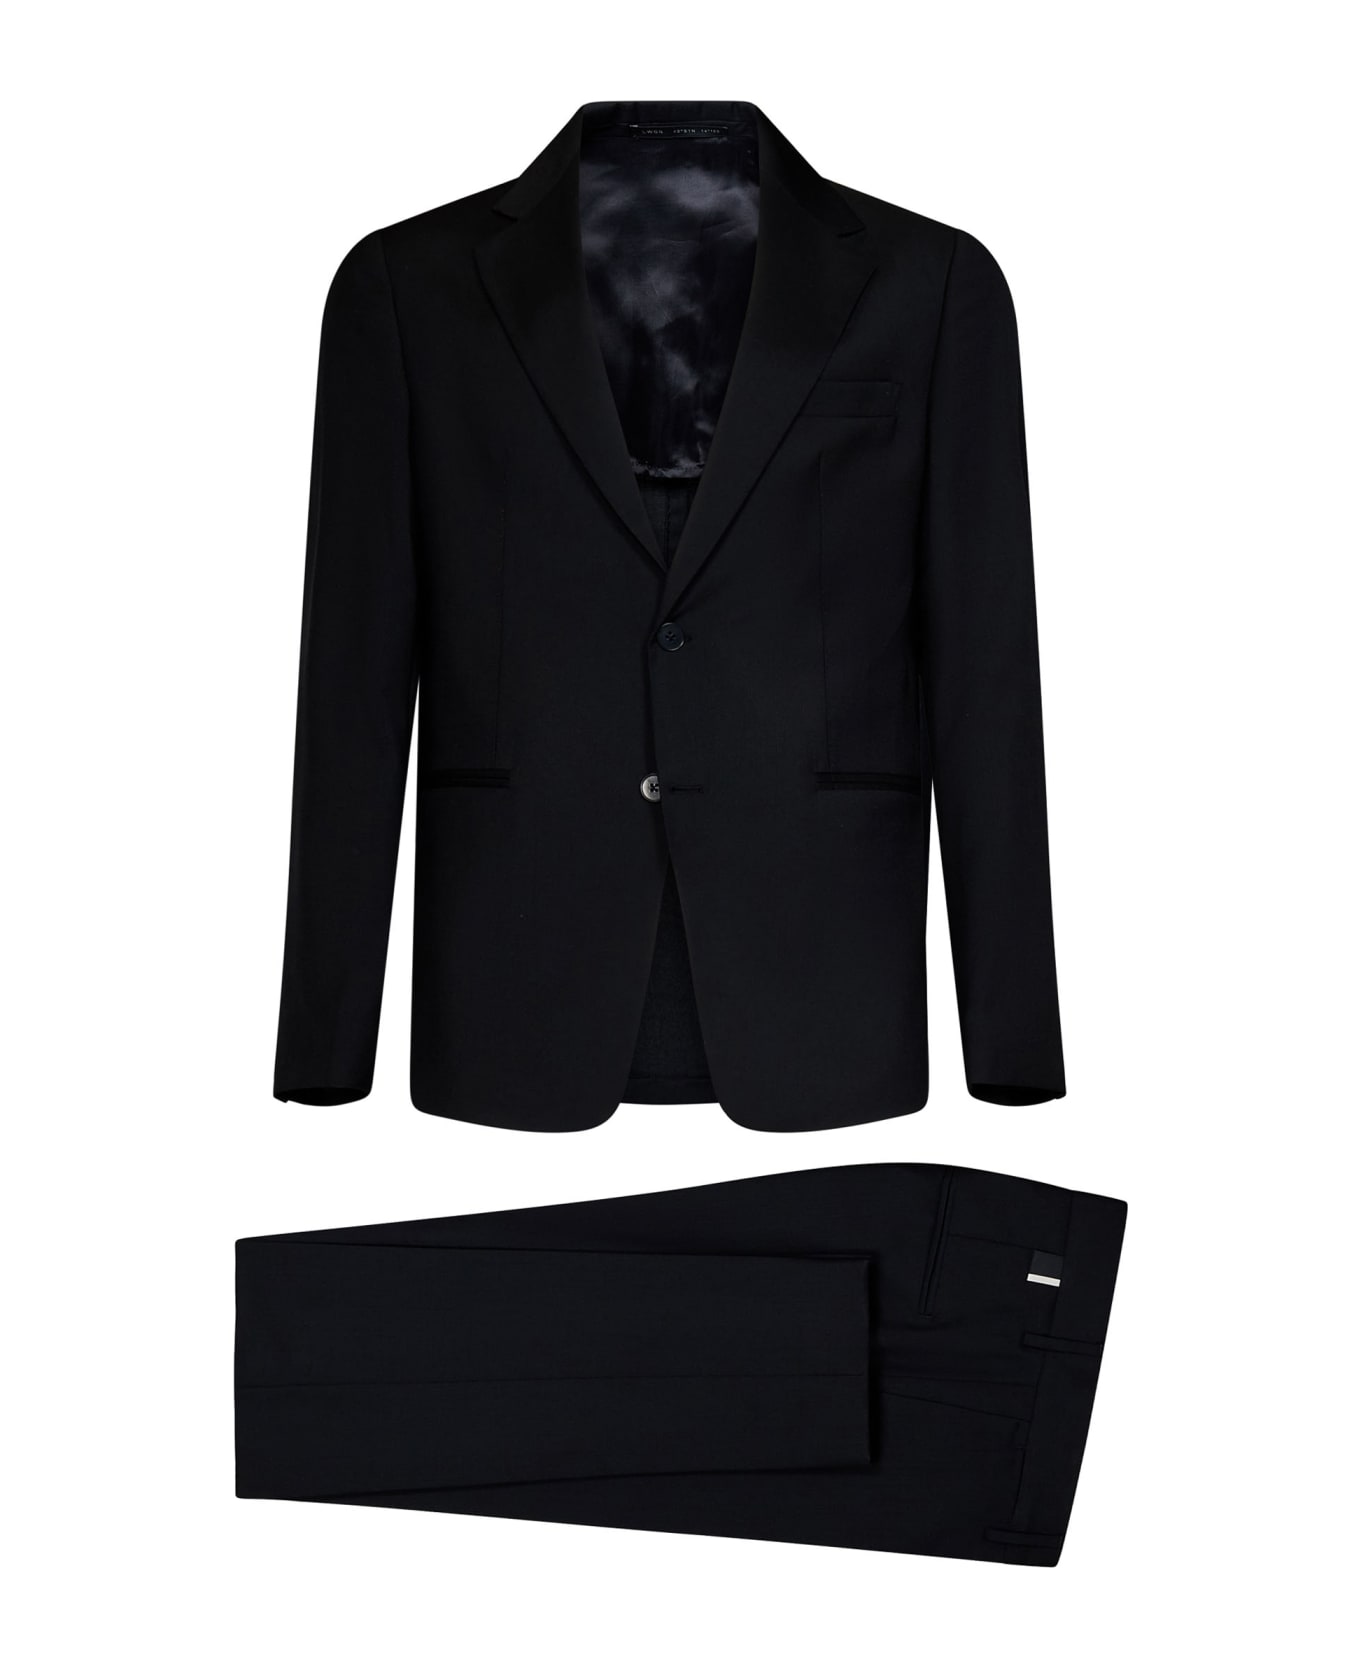 Low Brand Suit - Black